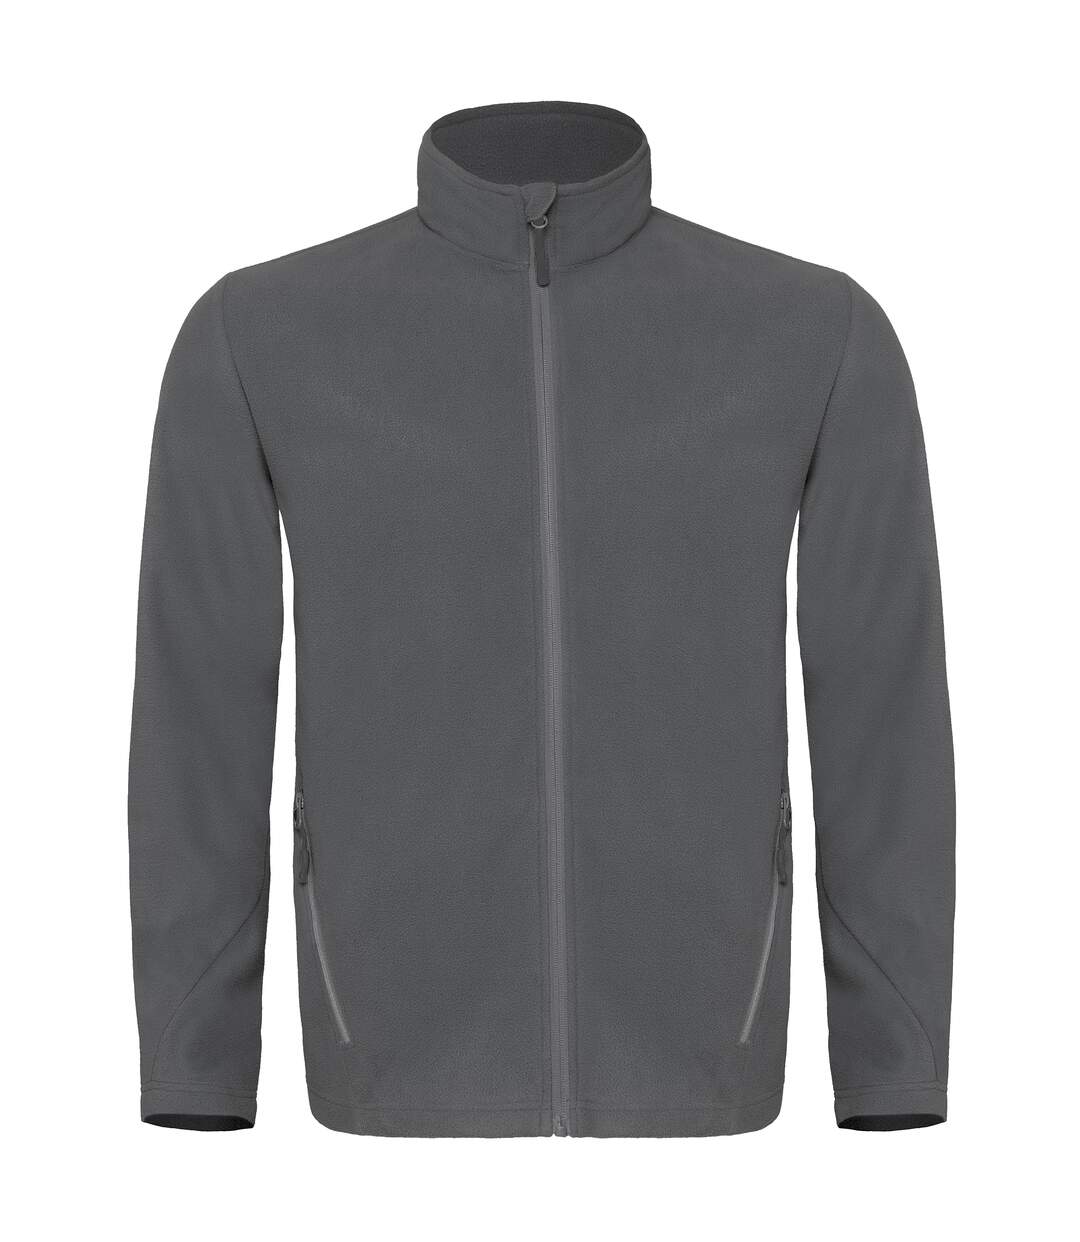 B&C Mens Coolstar Ultra Light Full Zip Fleece Top (Steel Grey)